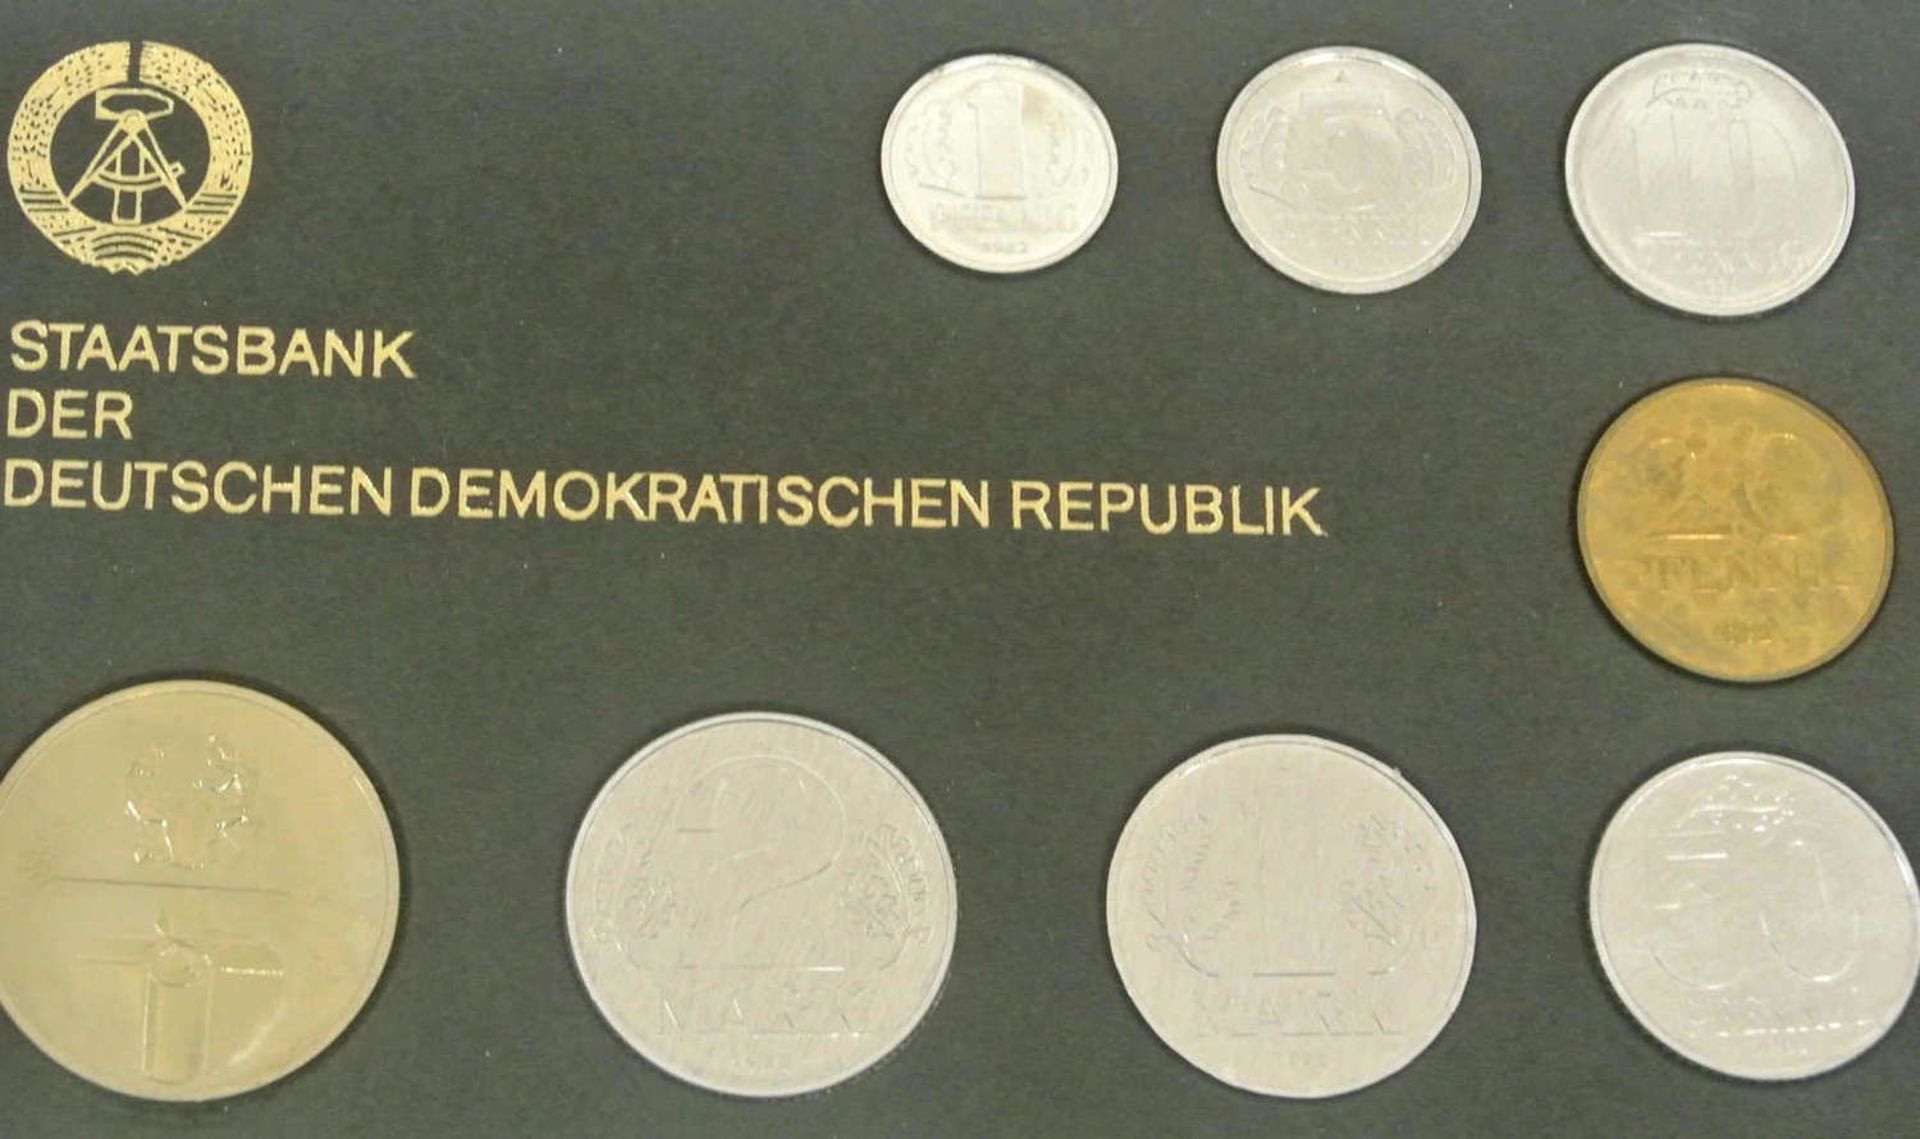 DDR Kursmünzsatz 1982, Stempelglanz, im Original Blister. Auflage 21.000 Stück